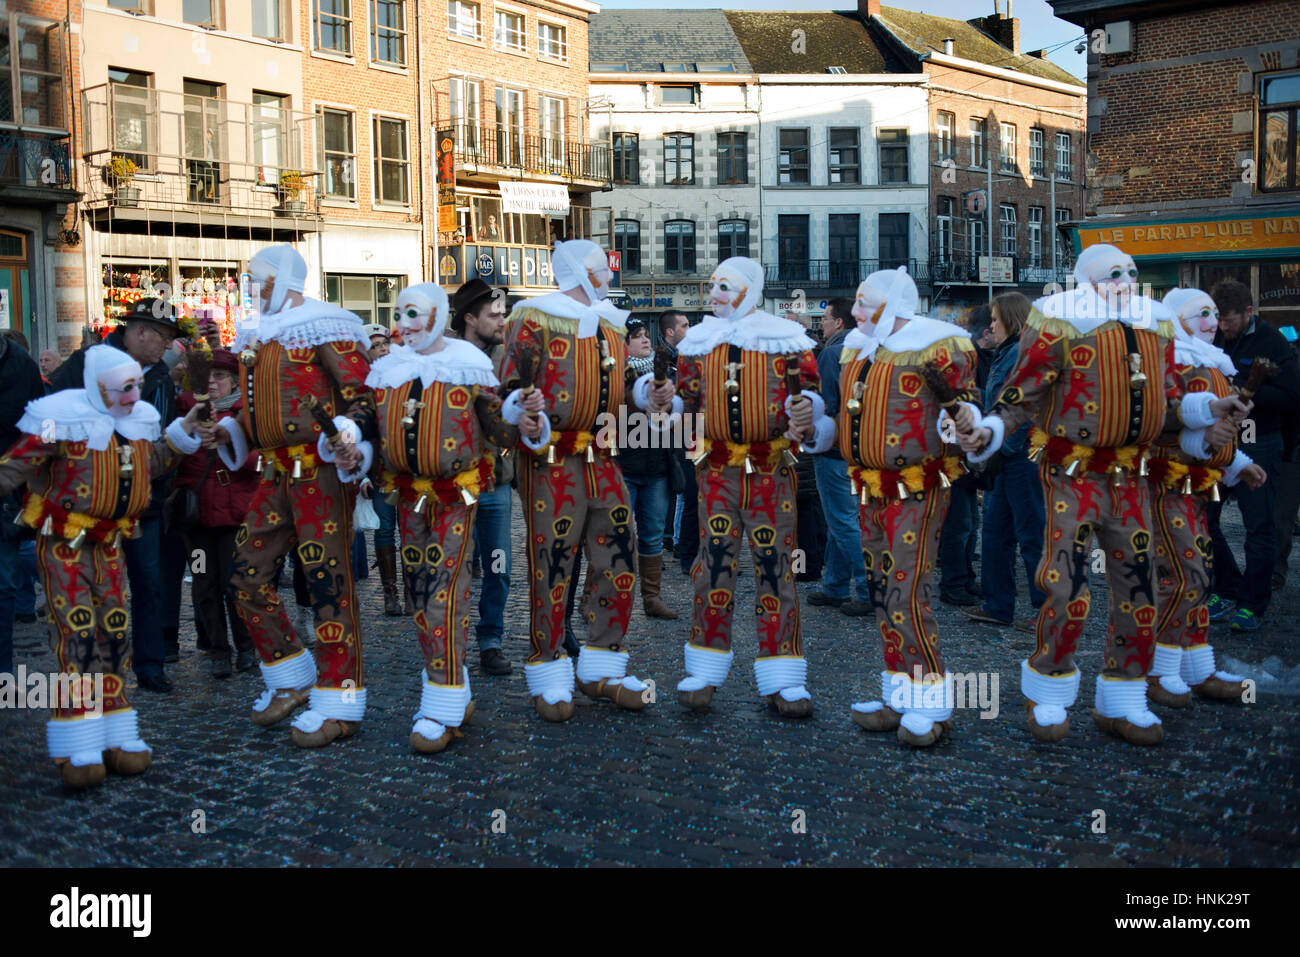 La Belgique, le carnaval de Binche. UNESCO World Heritage Festival Parade. La Belgique, l'Église catholique, province de Hainaut, village de Binche. L'carniva Banque D'Images